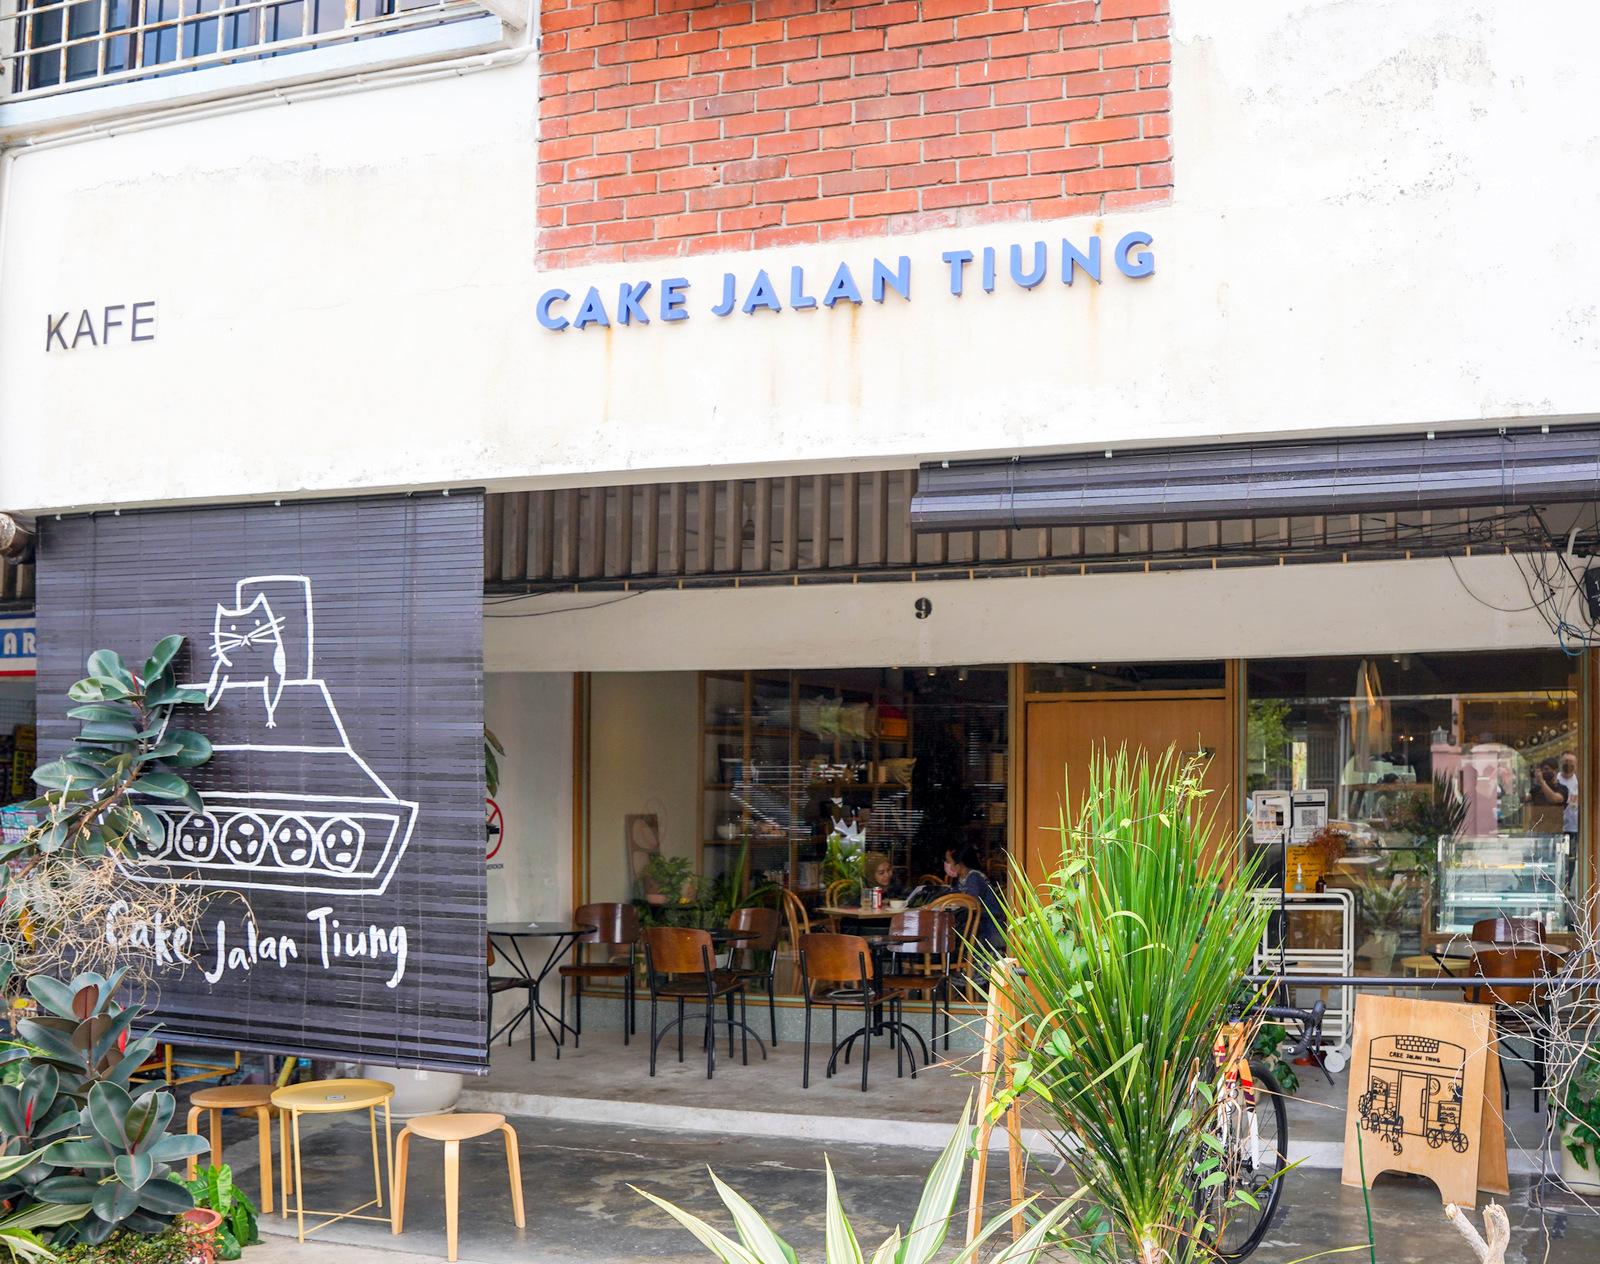 Cake Jalan Tiung-2.jpg